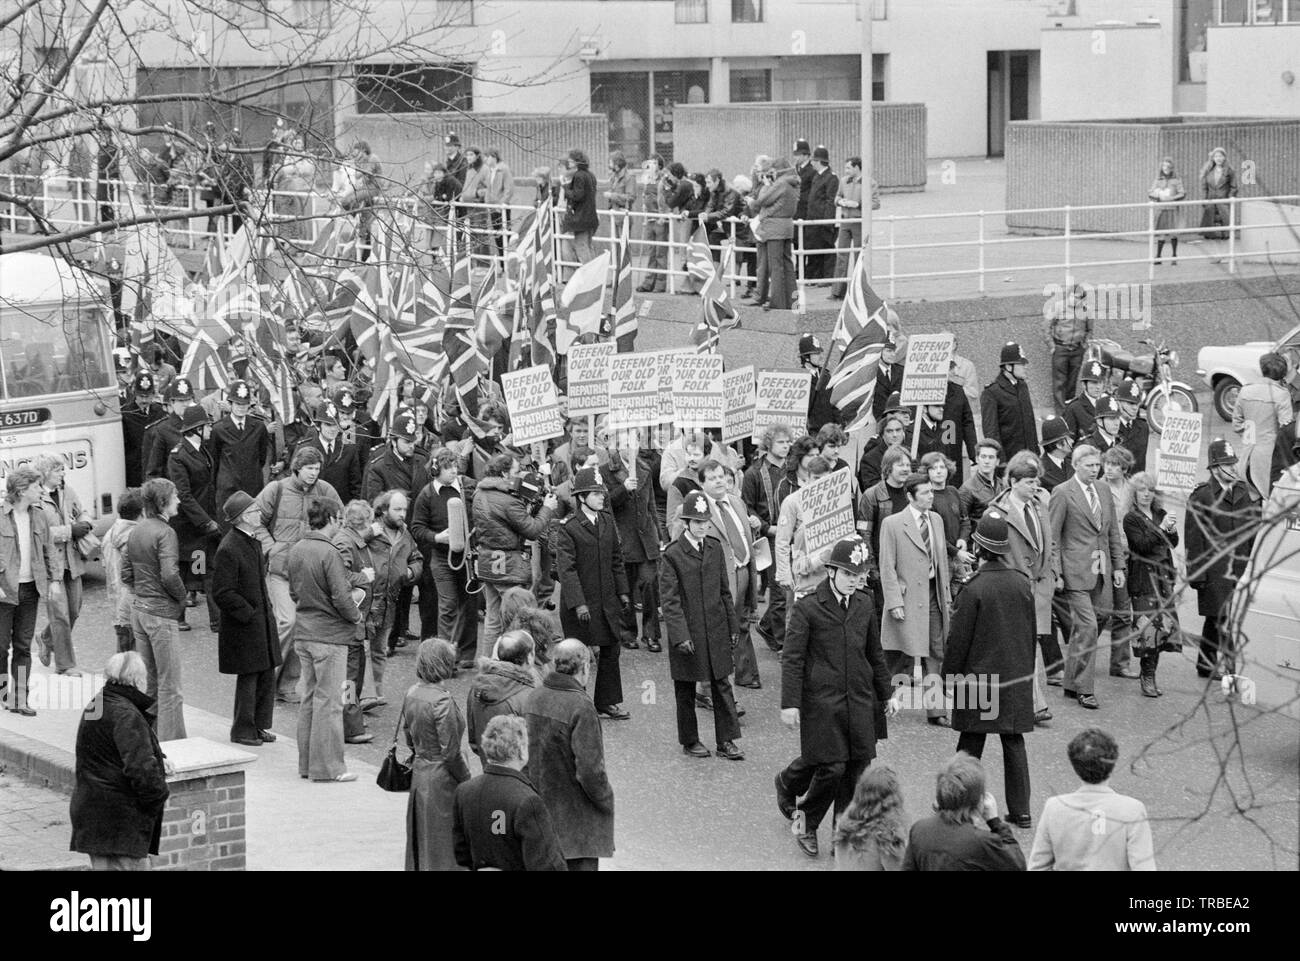 1980. Einen Marsch von der Nationalen Front, einer britischen Rechts faschistischen Partei, in Camberwell New Road, London, angeführt von seinem dann Führer Martin Webster. Banner verkünden würde unsere alten volkstümlichen efend' und 'Rückführung Muggers". Stockfoto